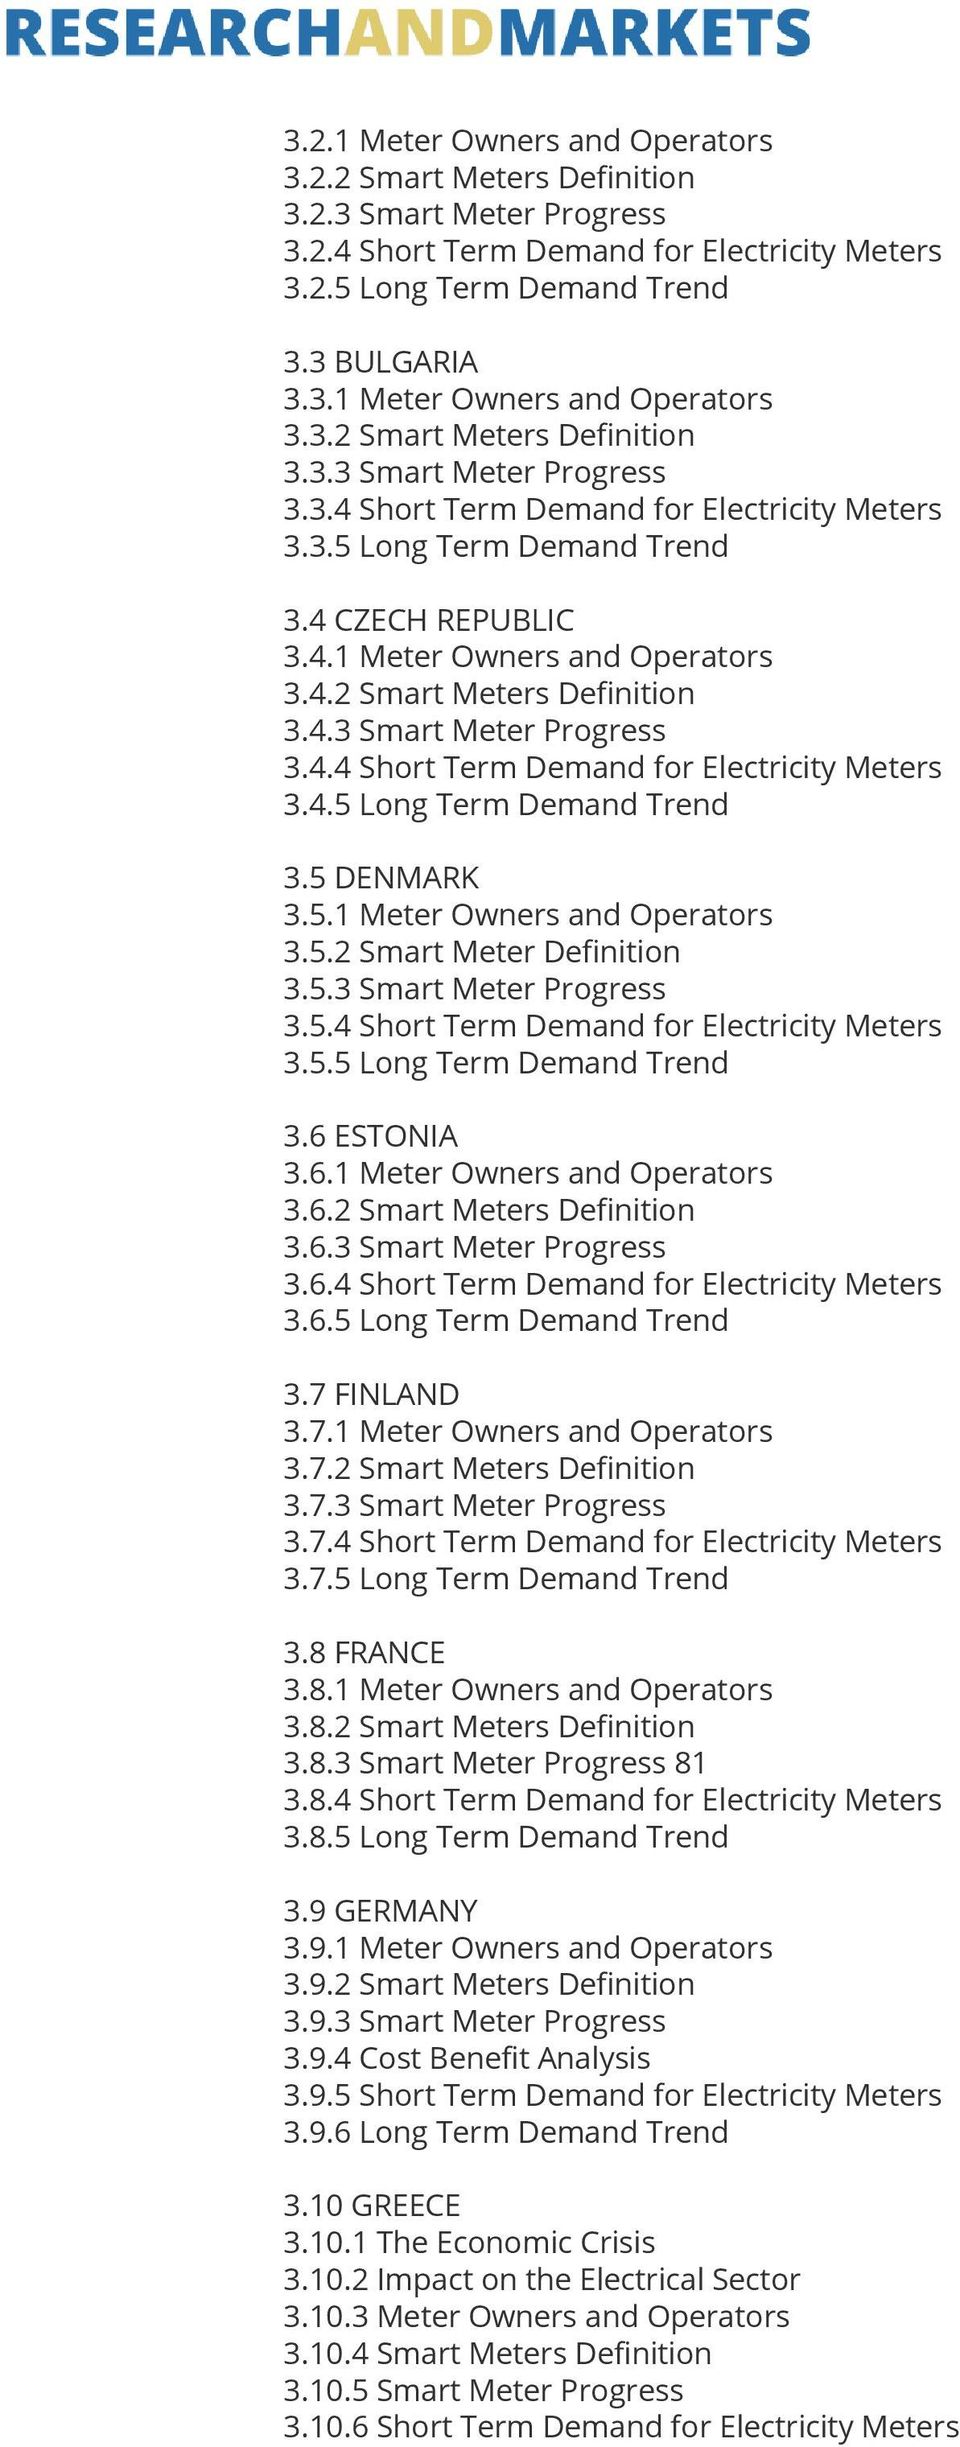 5.3 Smart Meter Progress 3.5.4 Short Term Demand for Electricity Meters 3.5.5 Long Term Demand Trend 3.6 ESTONIA 3.6.1 Meter Owners and Operators 3.6.2 Smart Meters Definition 3.6.3 Smart Meter Progress 3.6.4 Short Term Demand for Electricity Meters 3.6.5 Long Term Demand Trend 3.7 FINLAND 3.